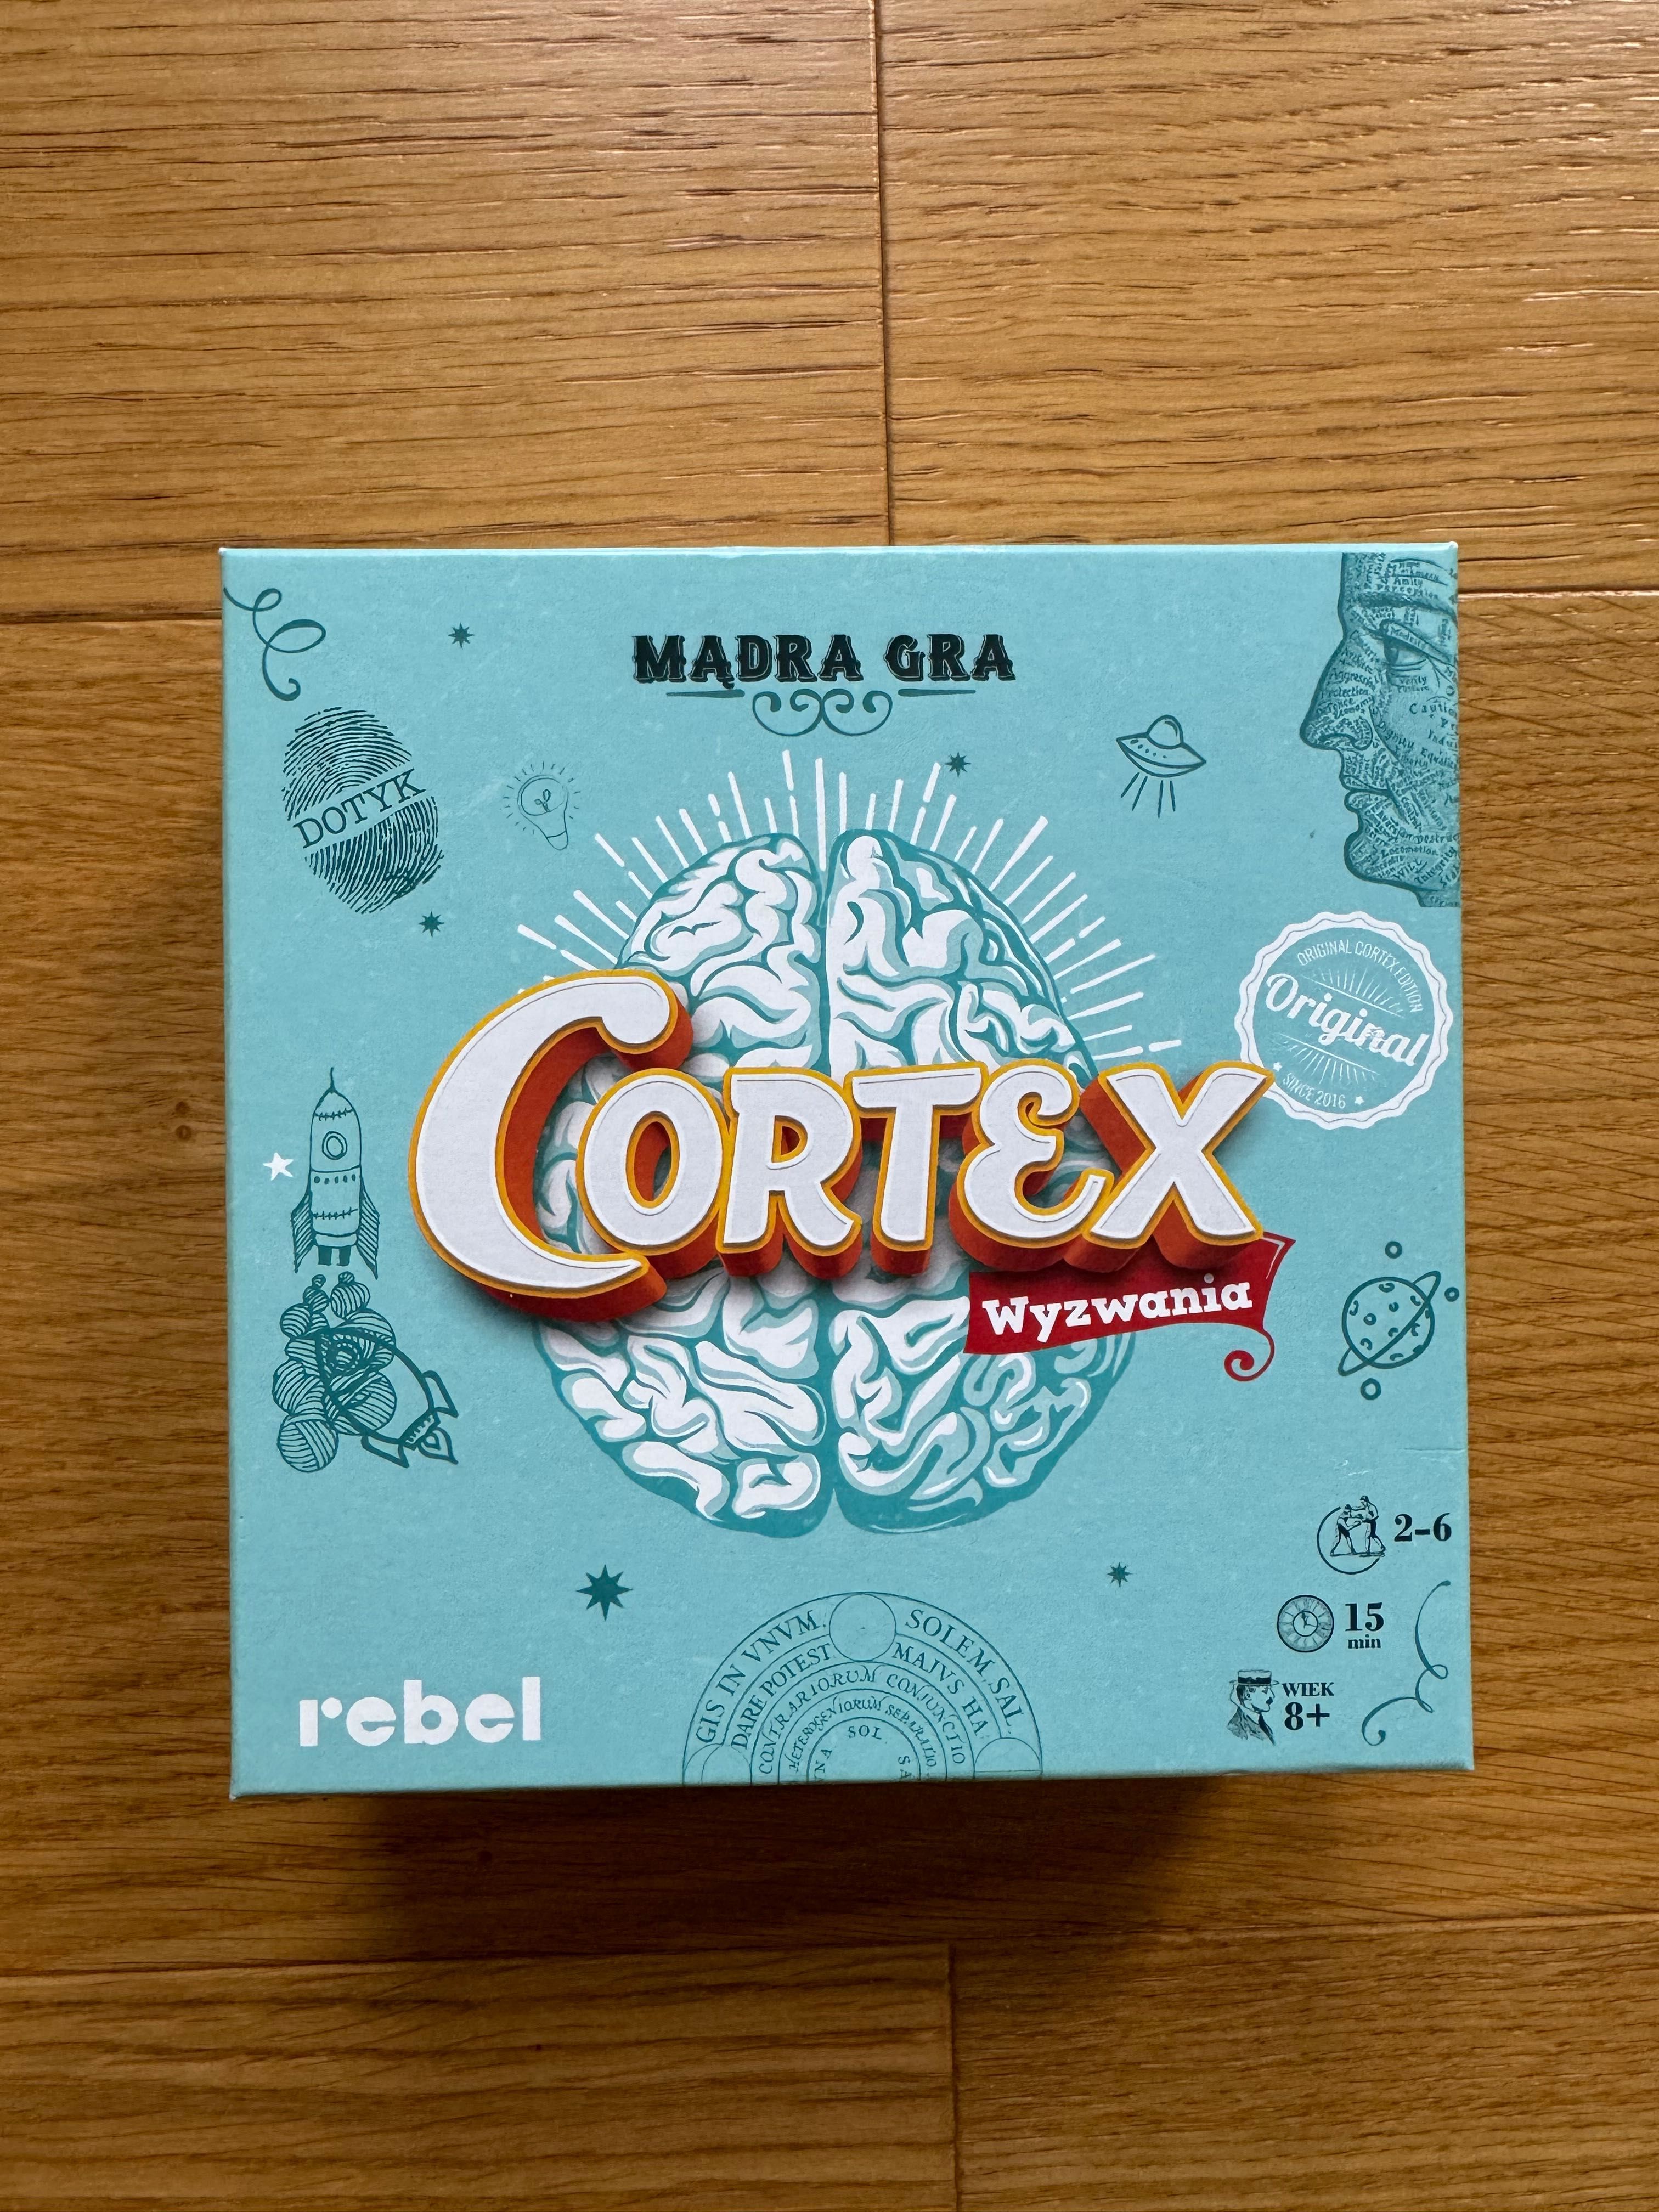 cortex wyzwania rebel